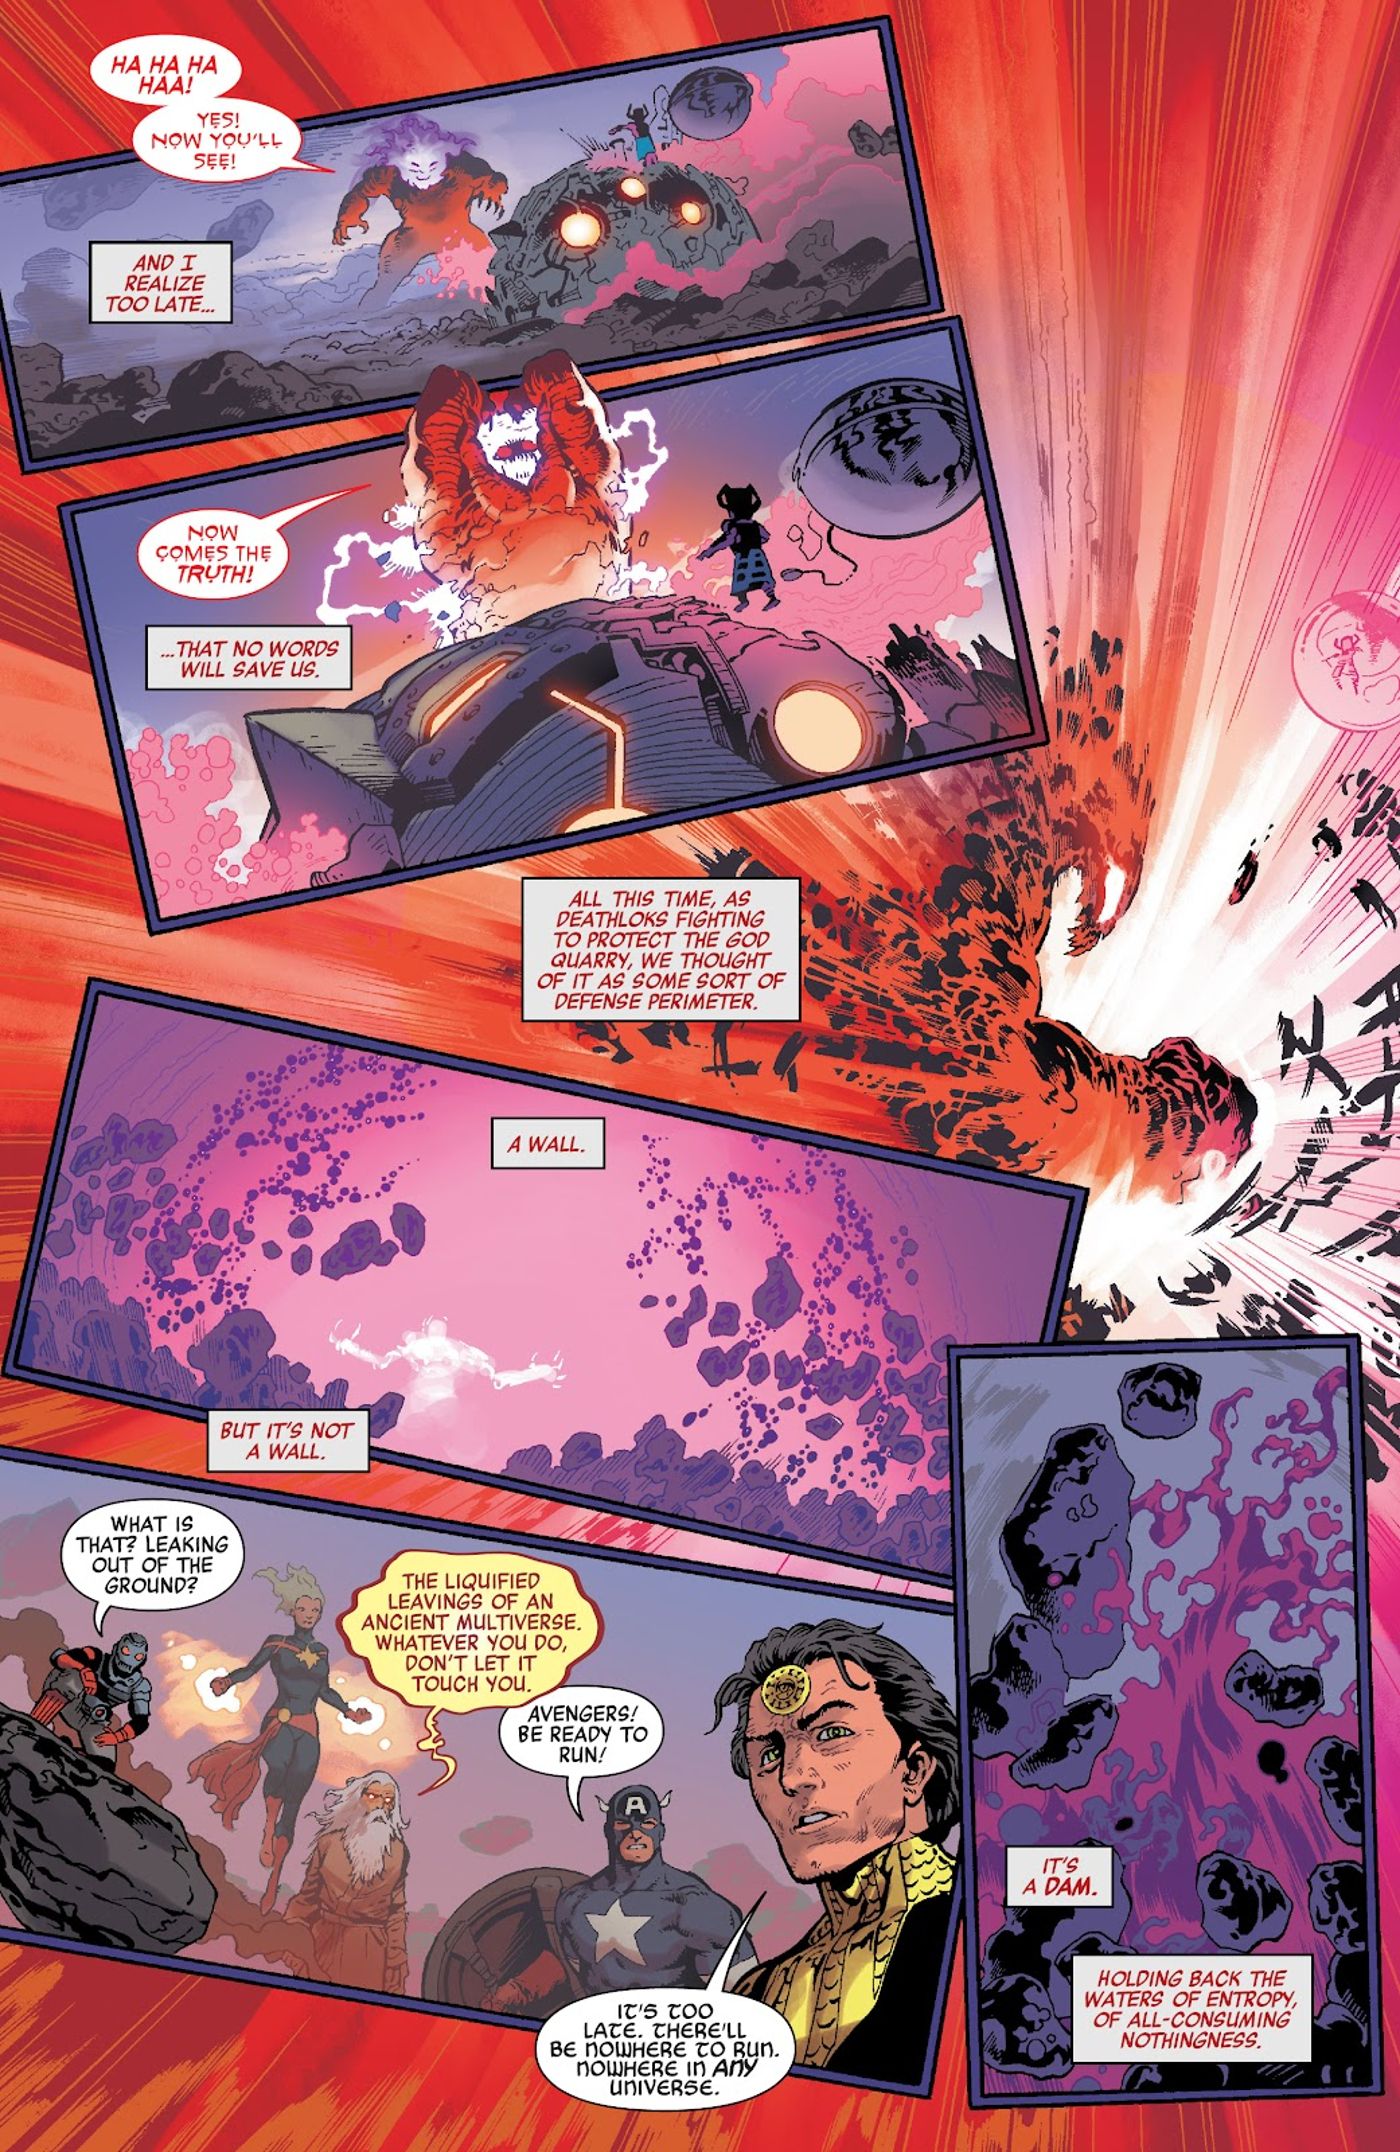 Mephisto détruit la carrière de la création dans Avengers Forever